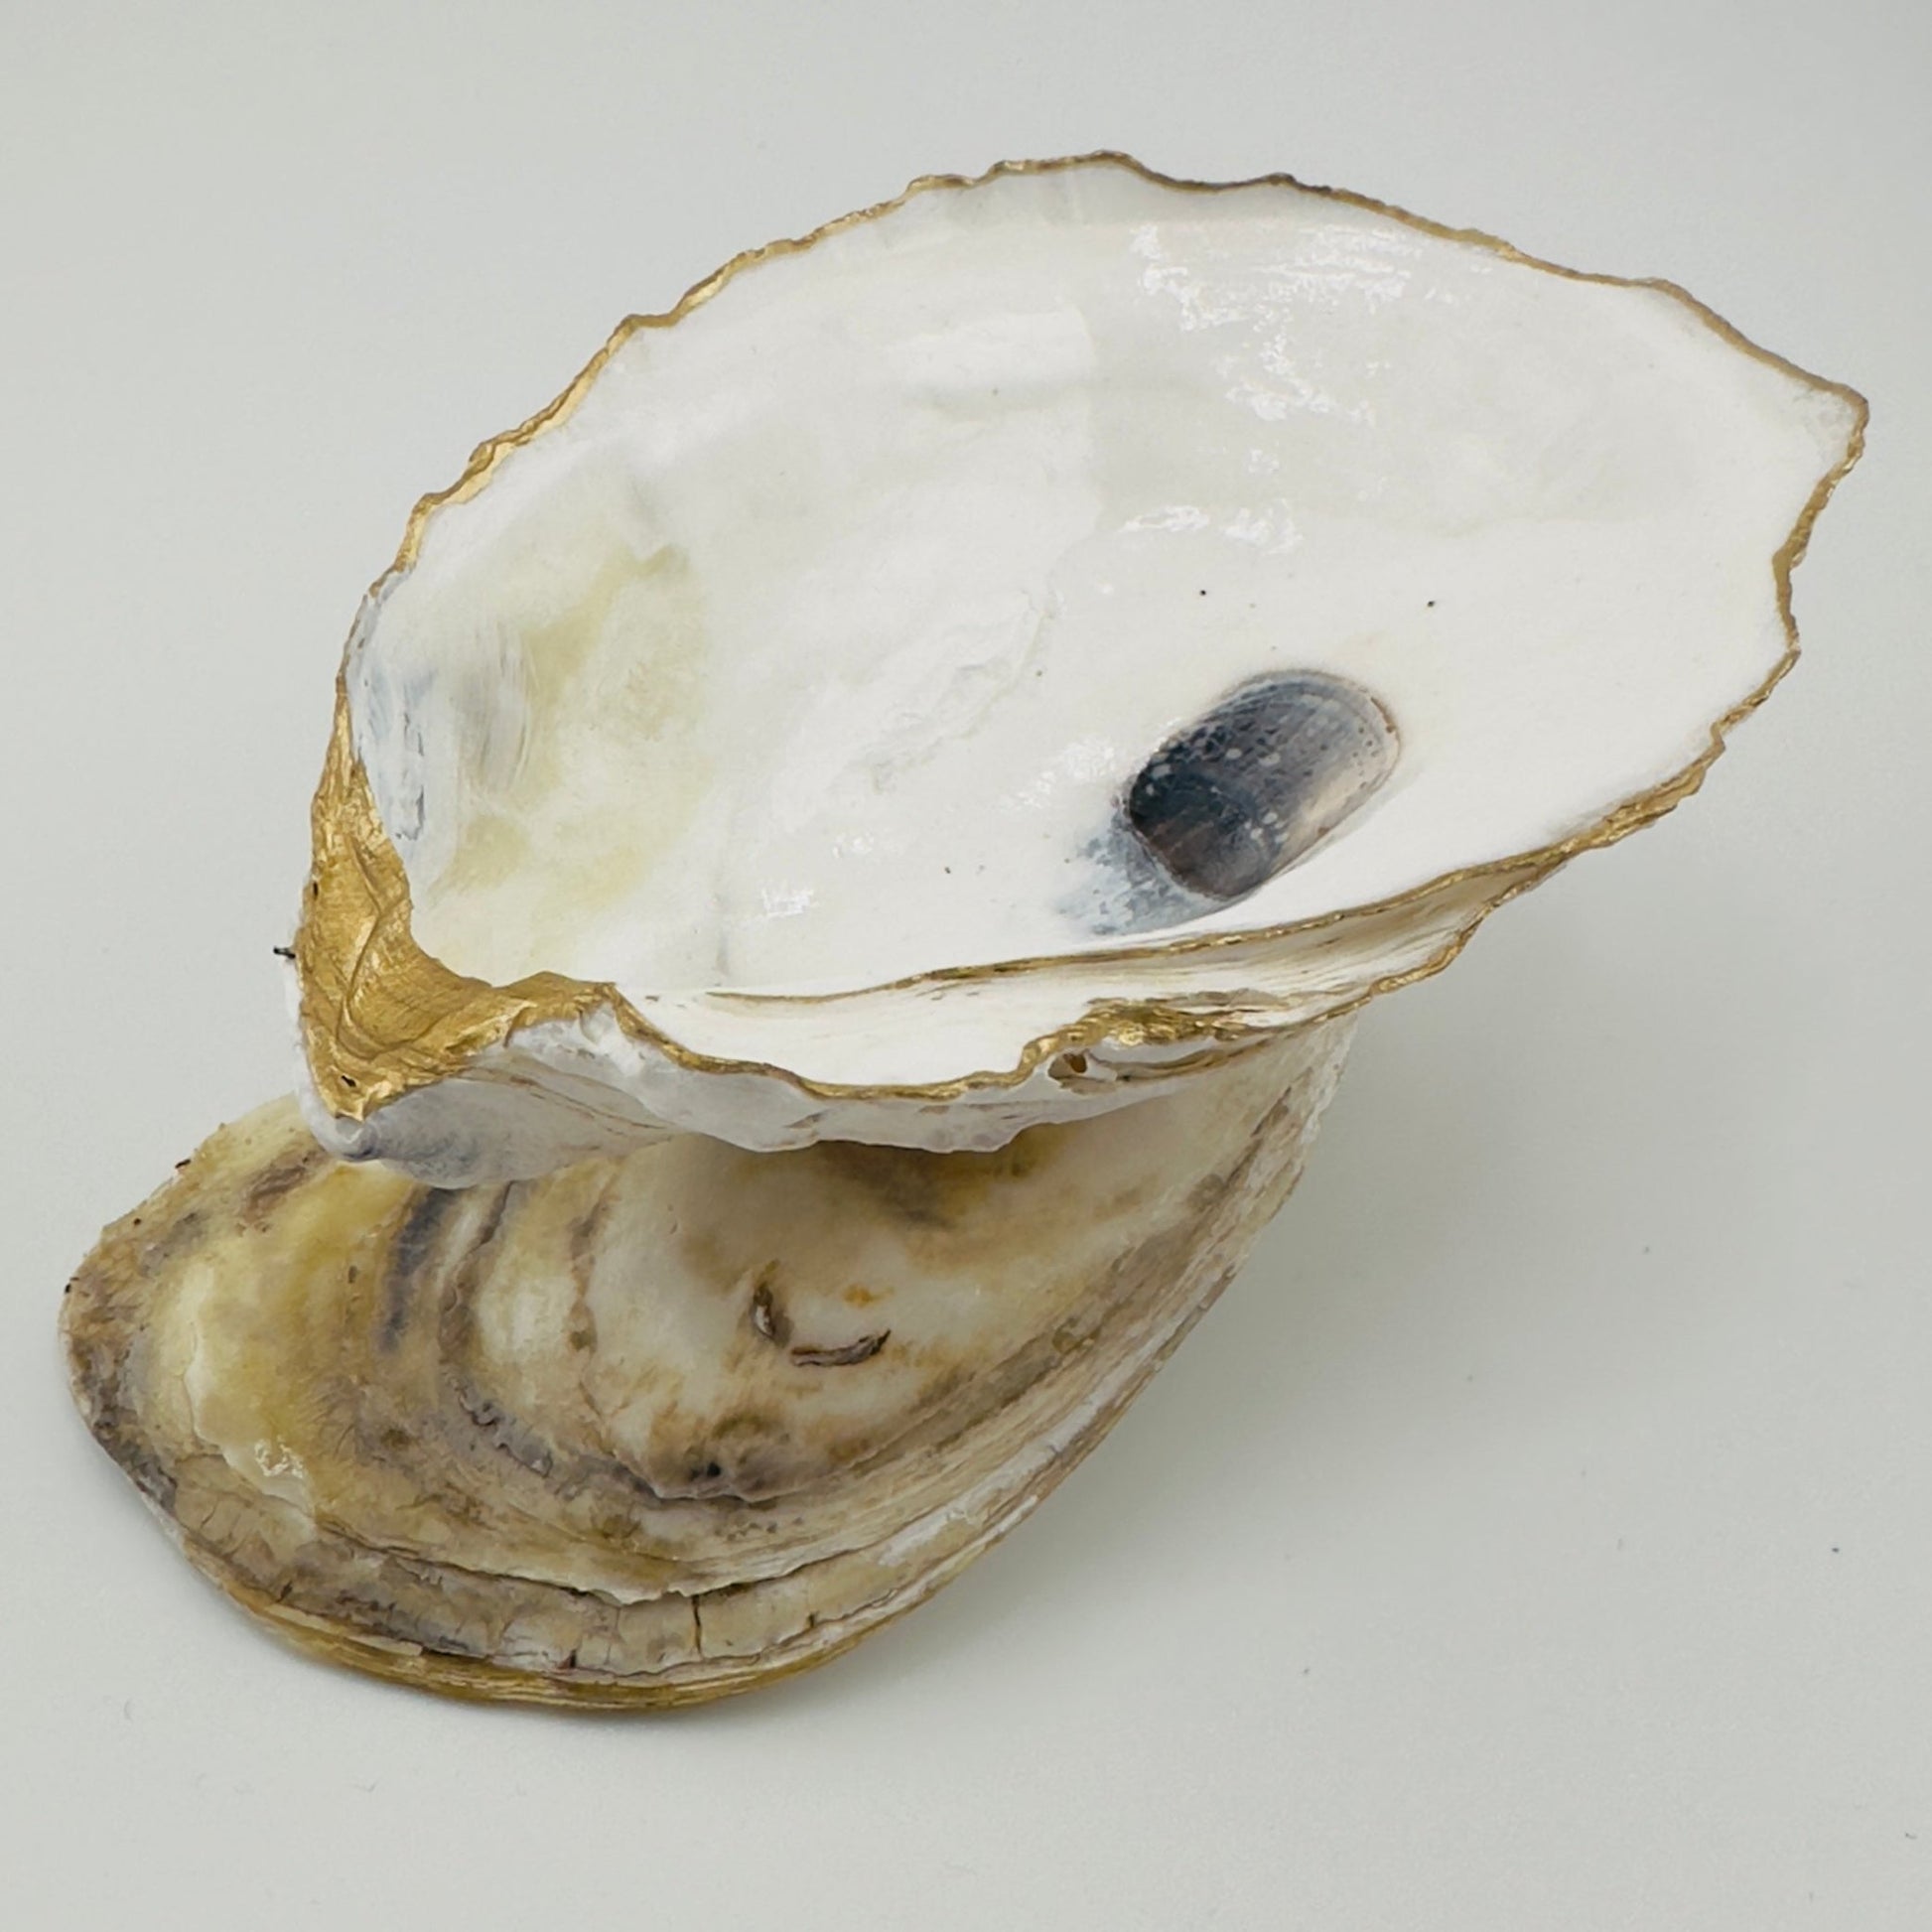 Oyster Trinket Holders - Shell Yeah by Jaks5